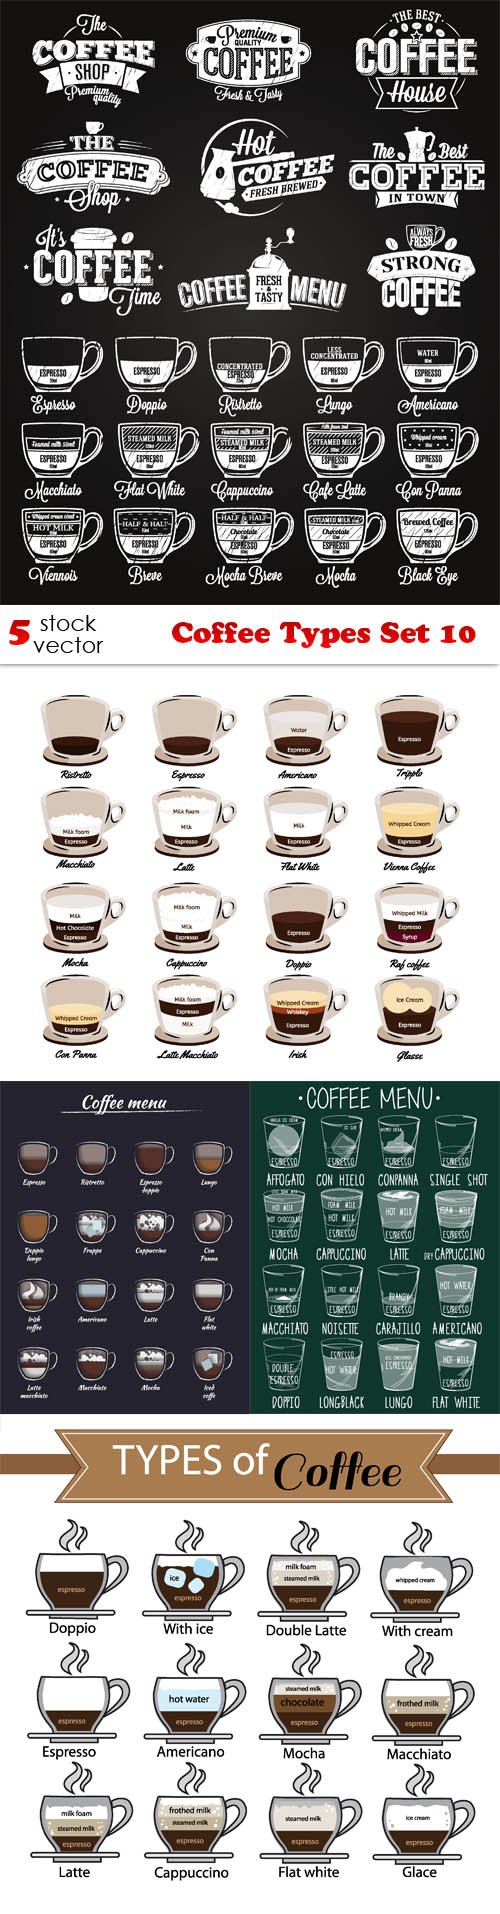 Vectors - Coffee Types Set 10